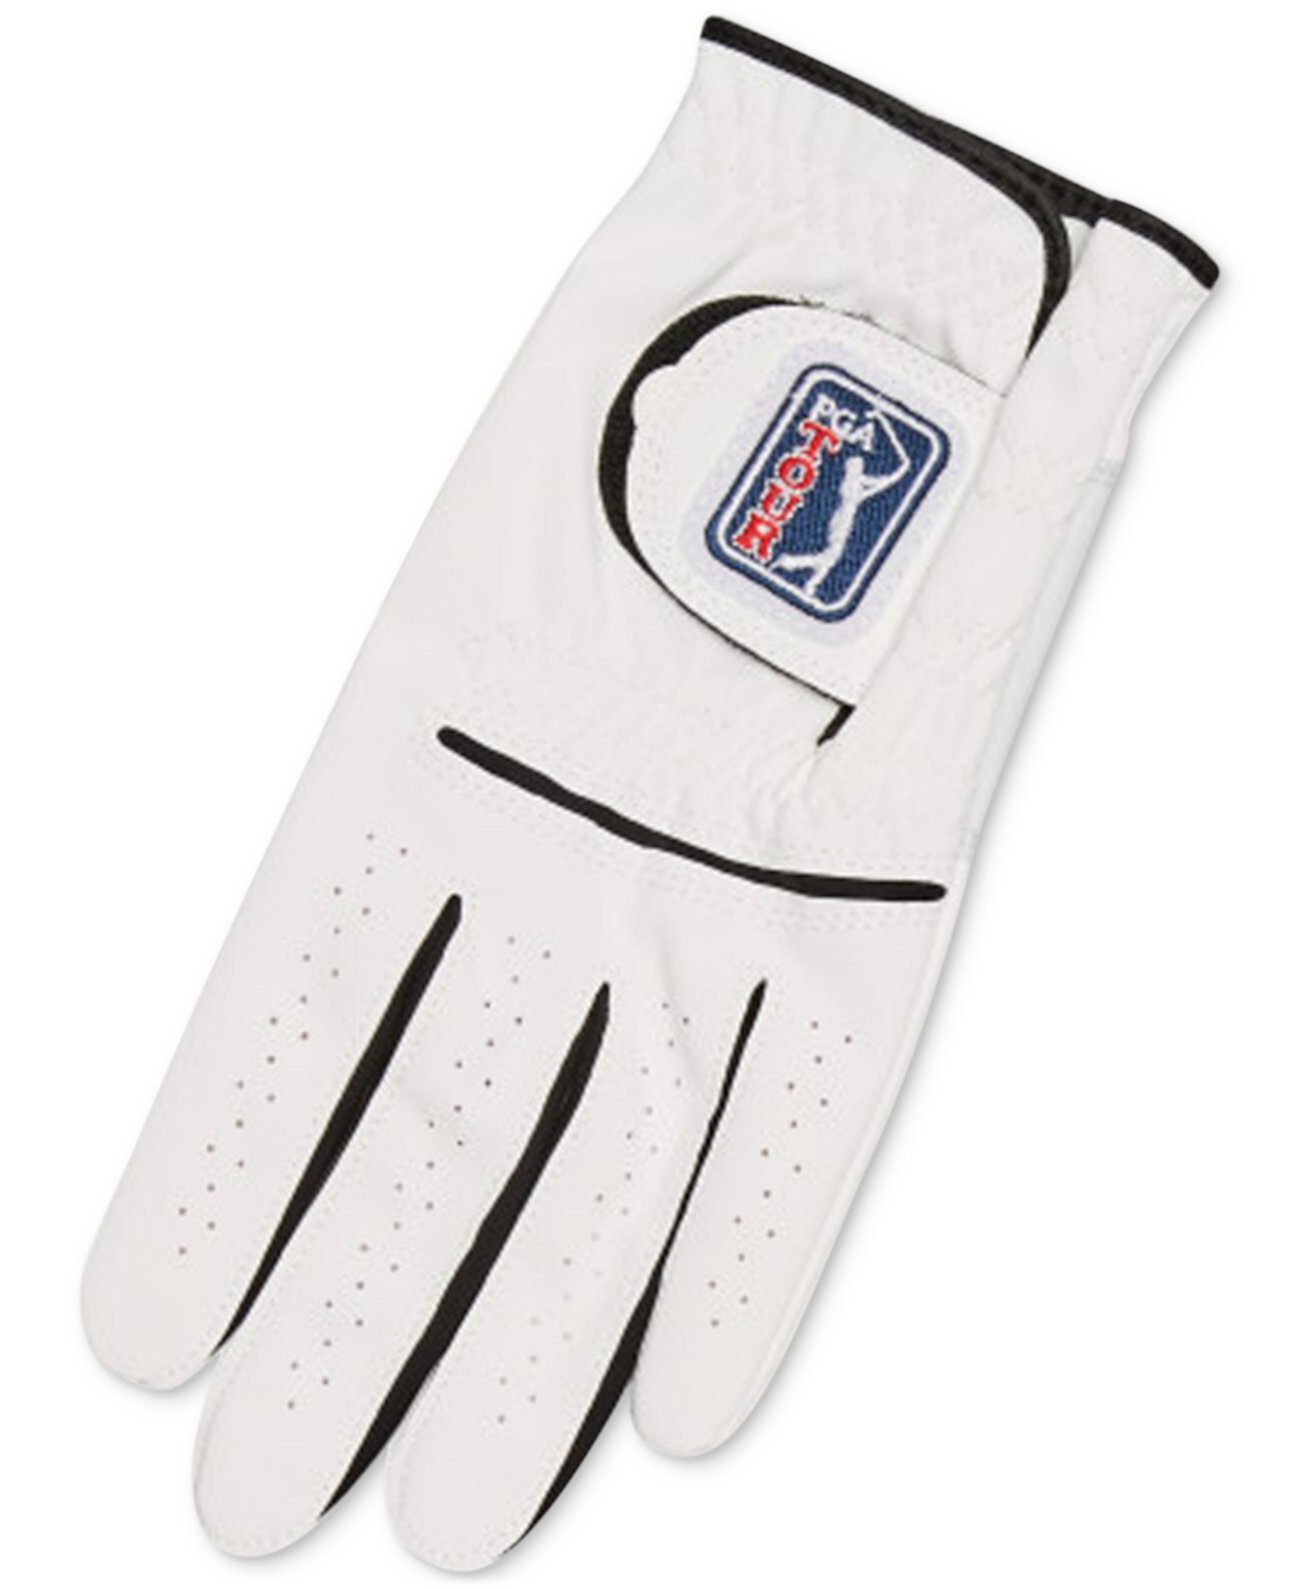 Мужские перчатки для гольфа SwingSoft Left Cadet Golf PGA TOUR